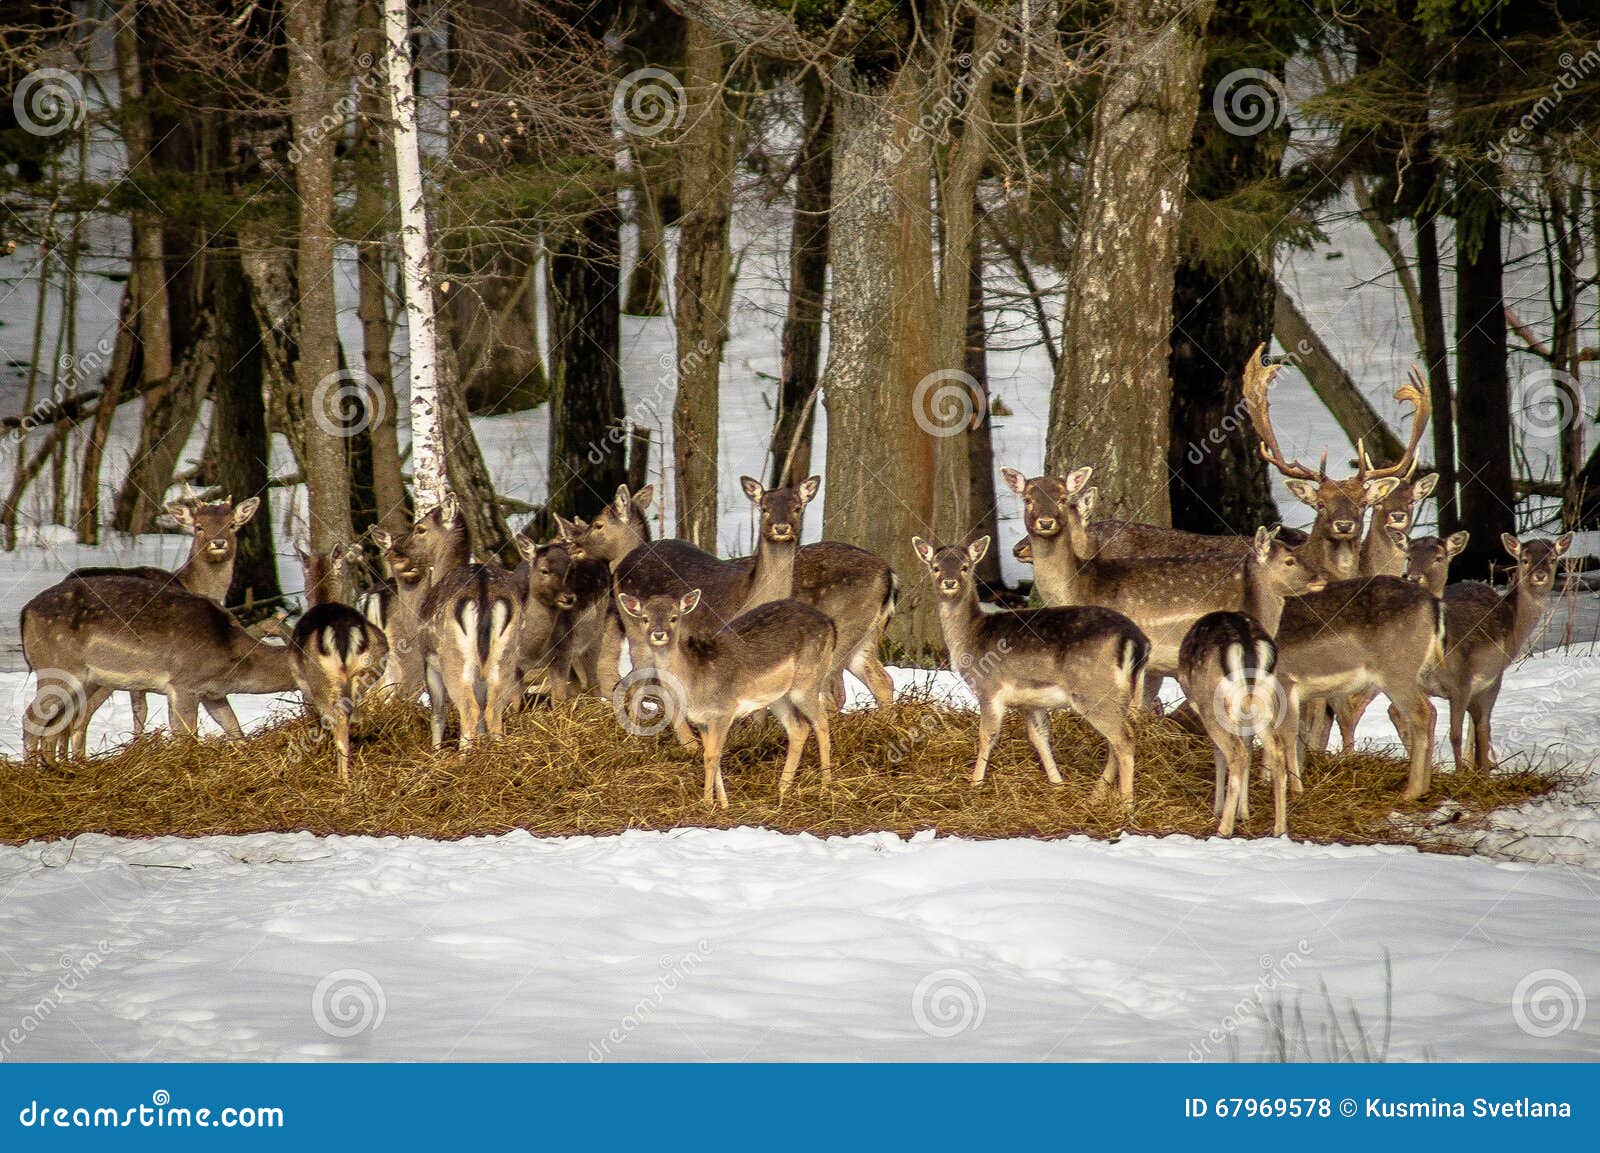 108 Deer Salt Lick Stock Photos